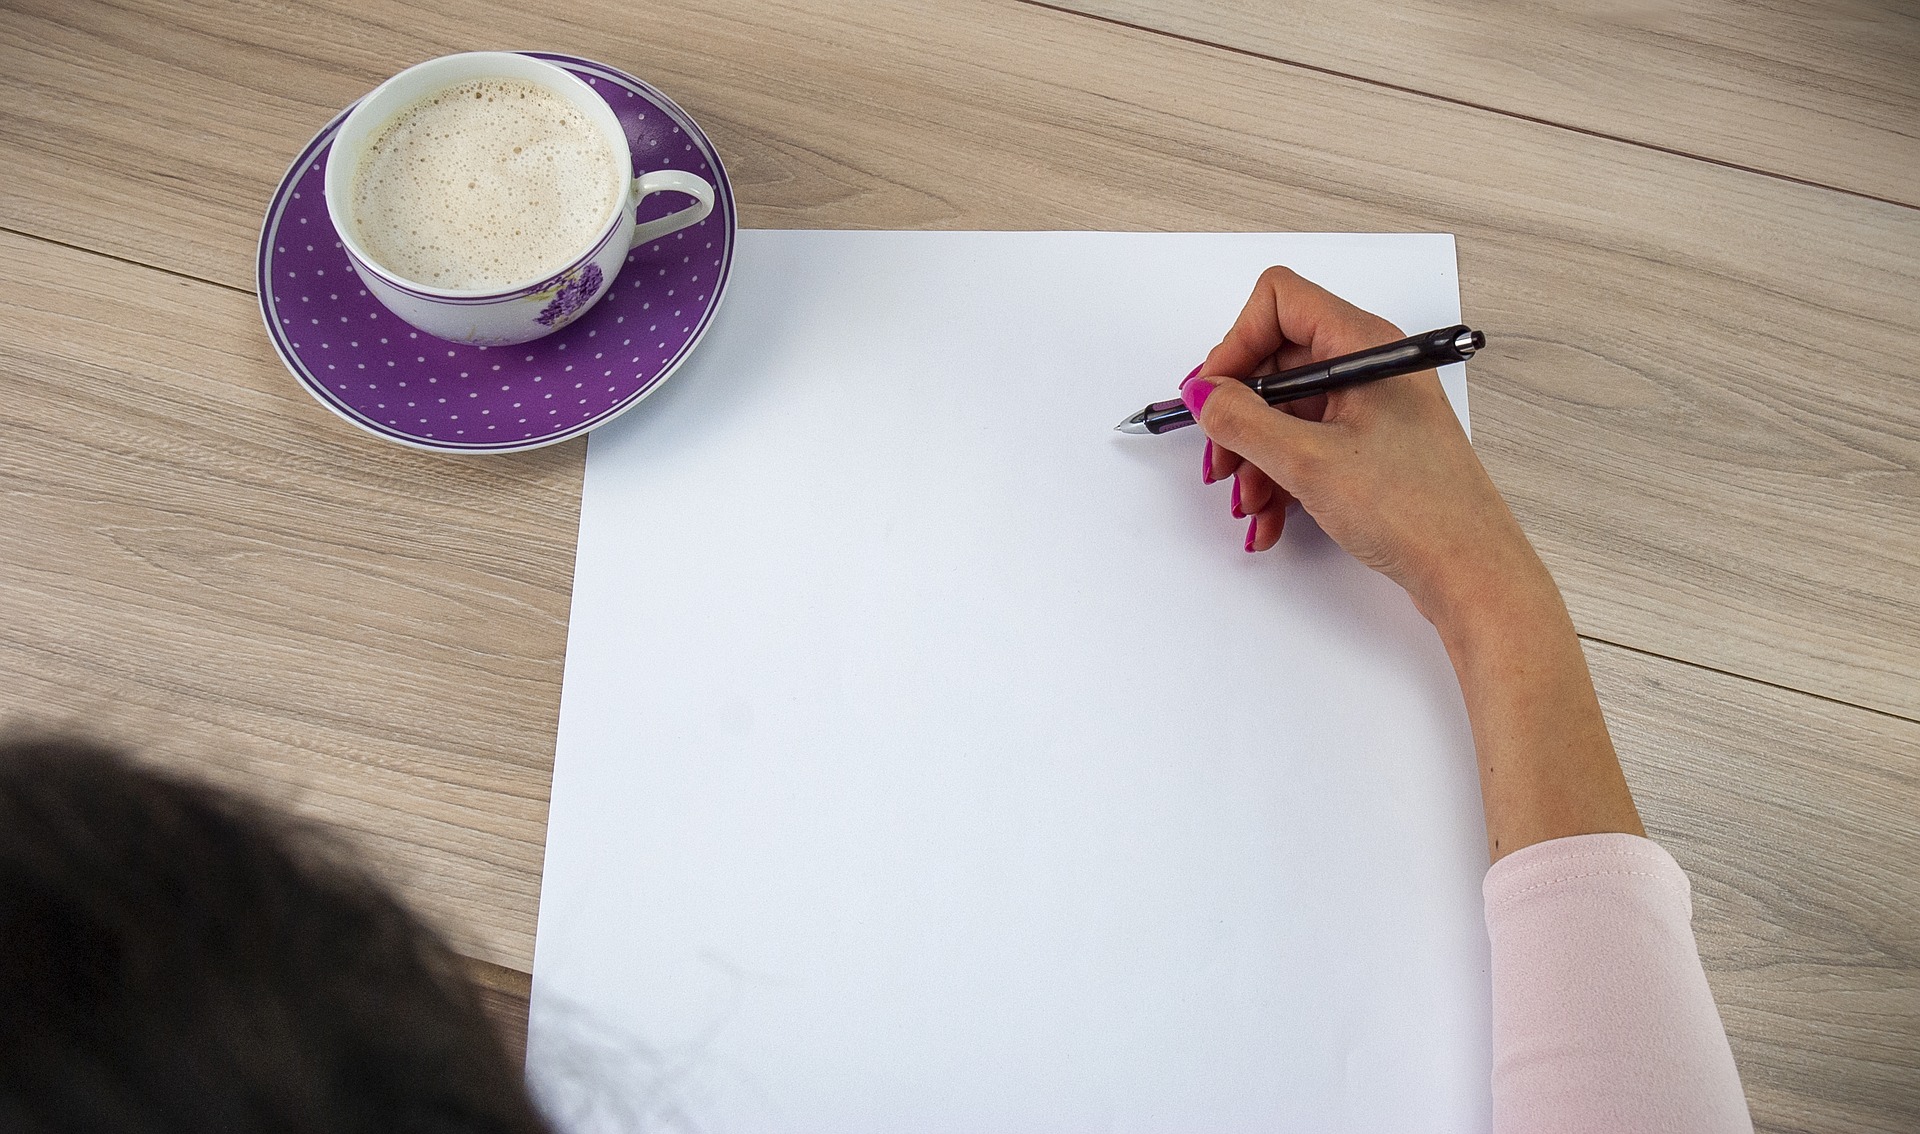 Une main saisit un stylo sur une feuille de papier vierge avec une tasse de café à côté.